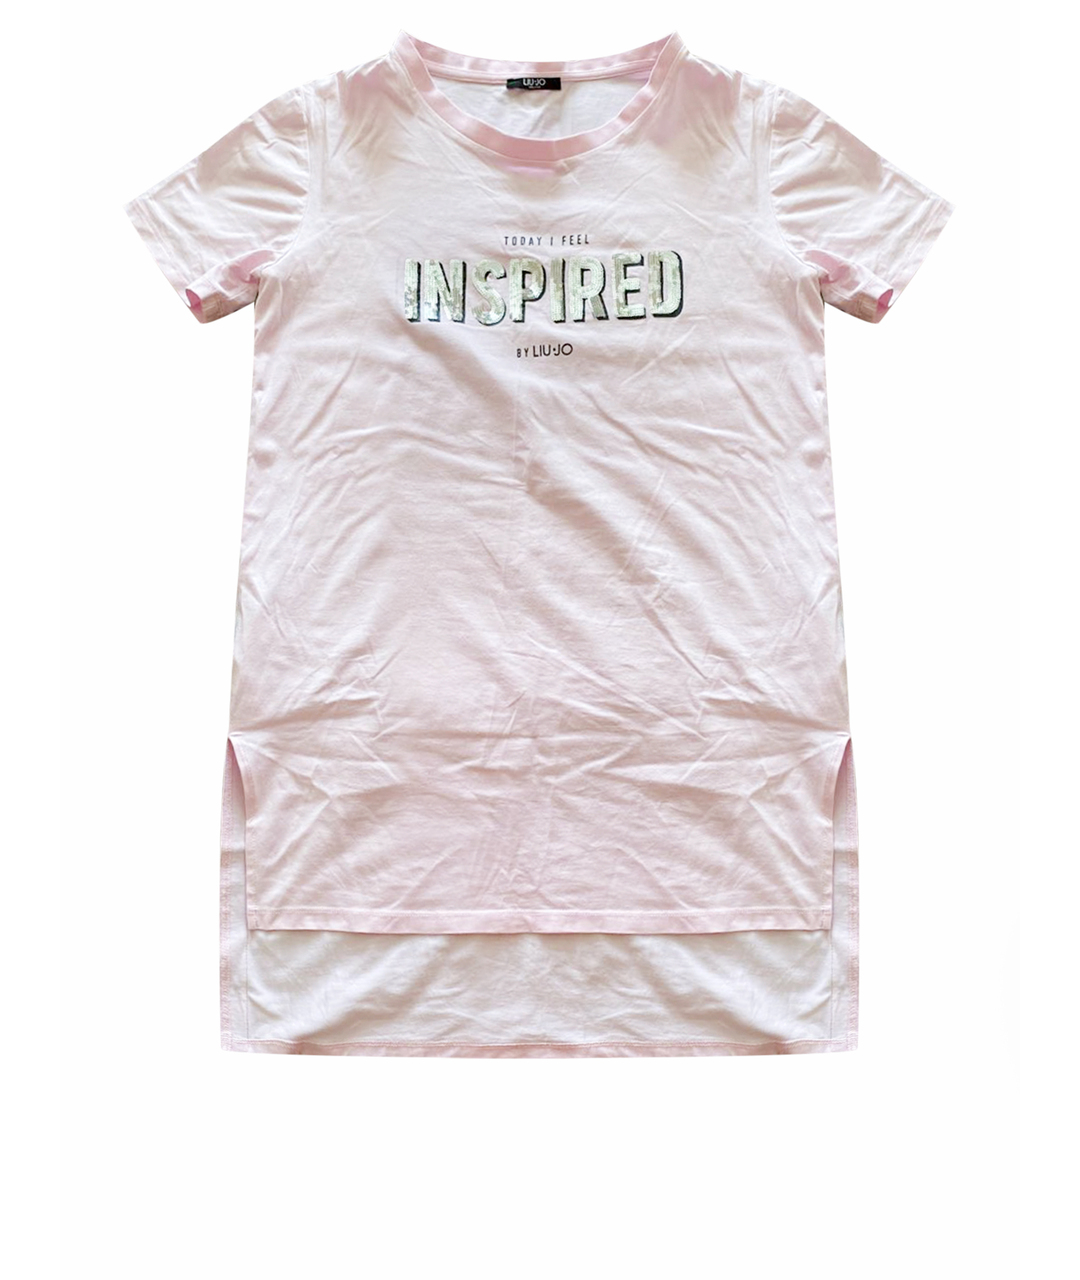 LIU JO Розовая хлопковая футболка, фото 1